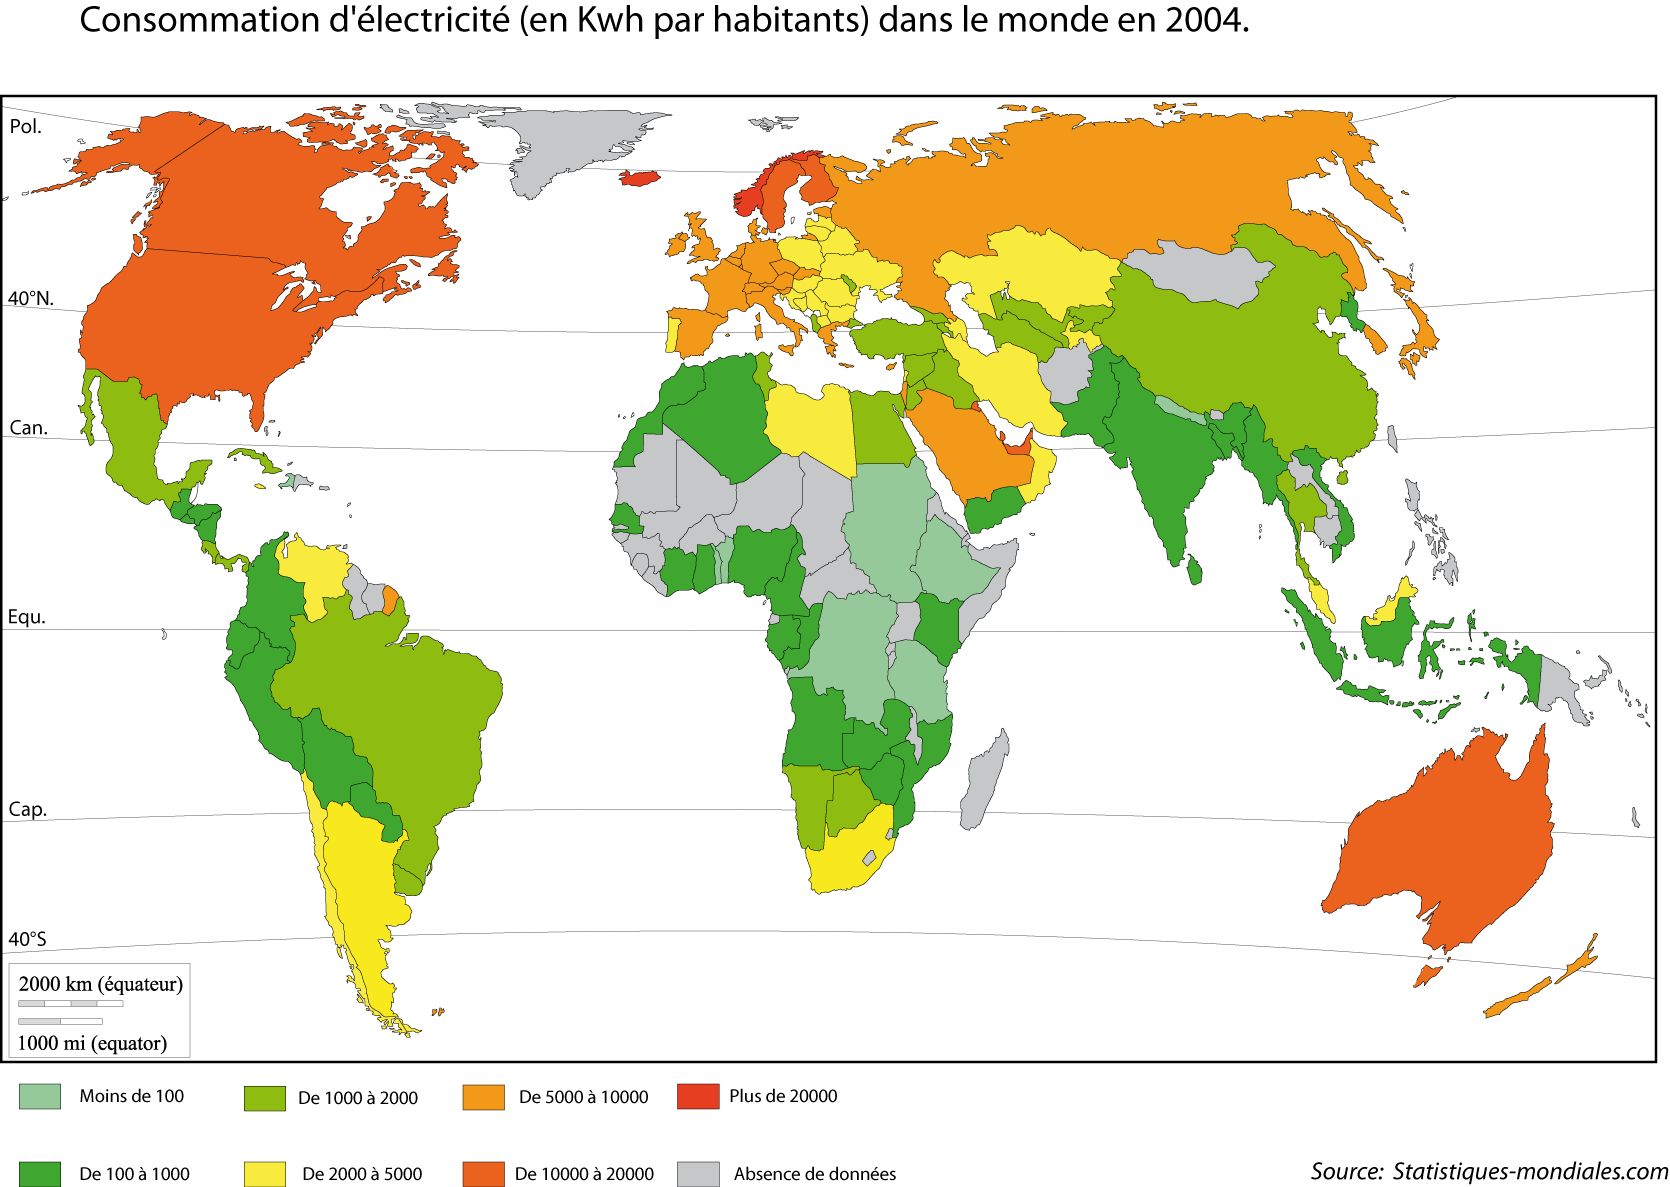 Consommation d'électricité dans le monde en kwh par habitant dans le monde en 2004